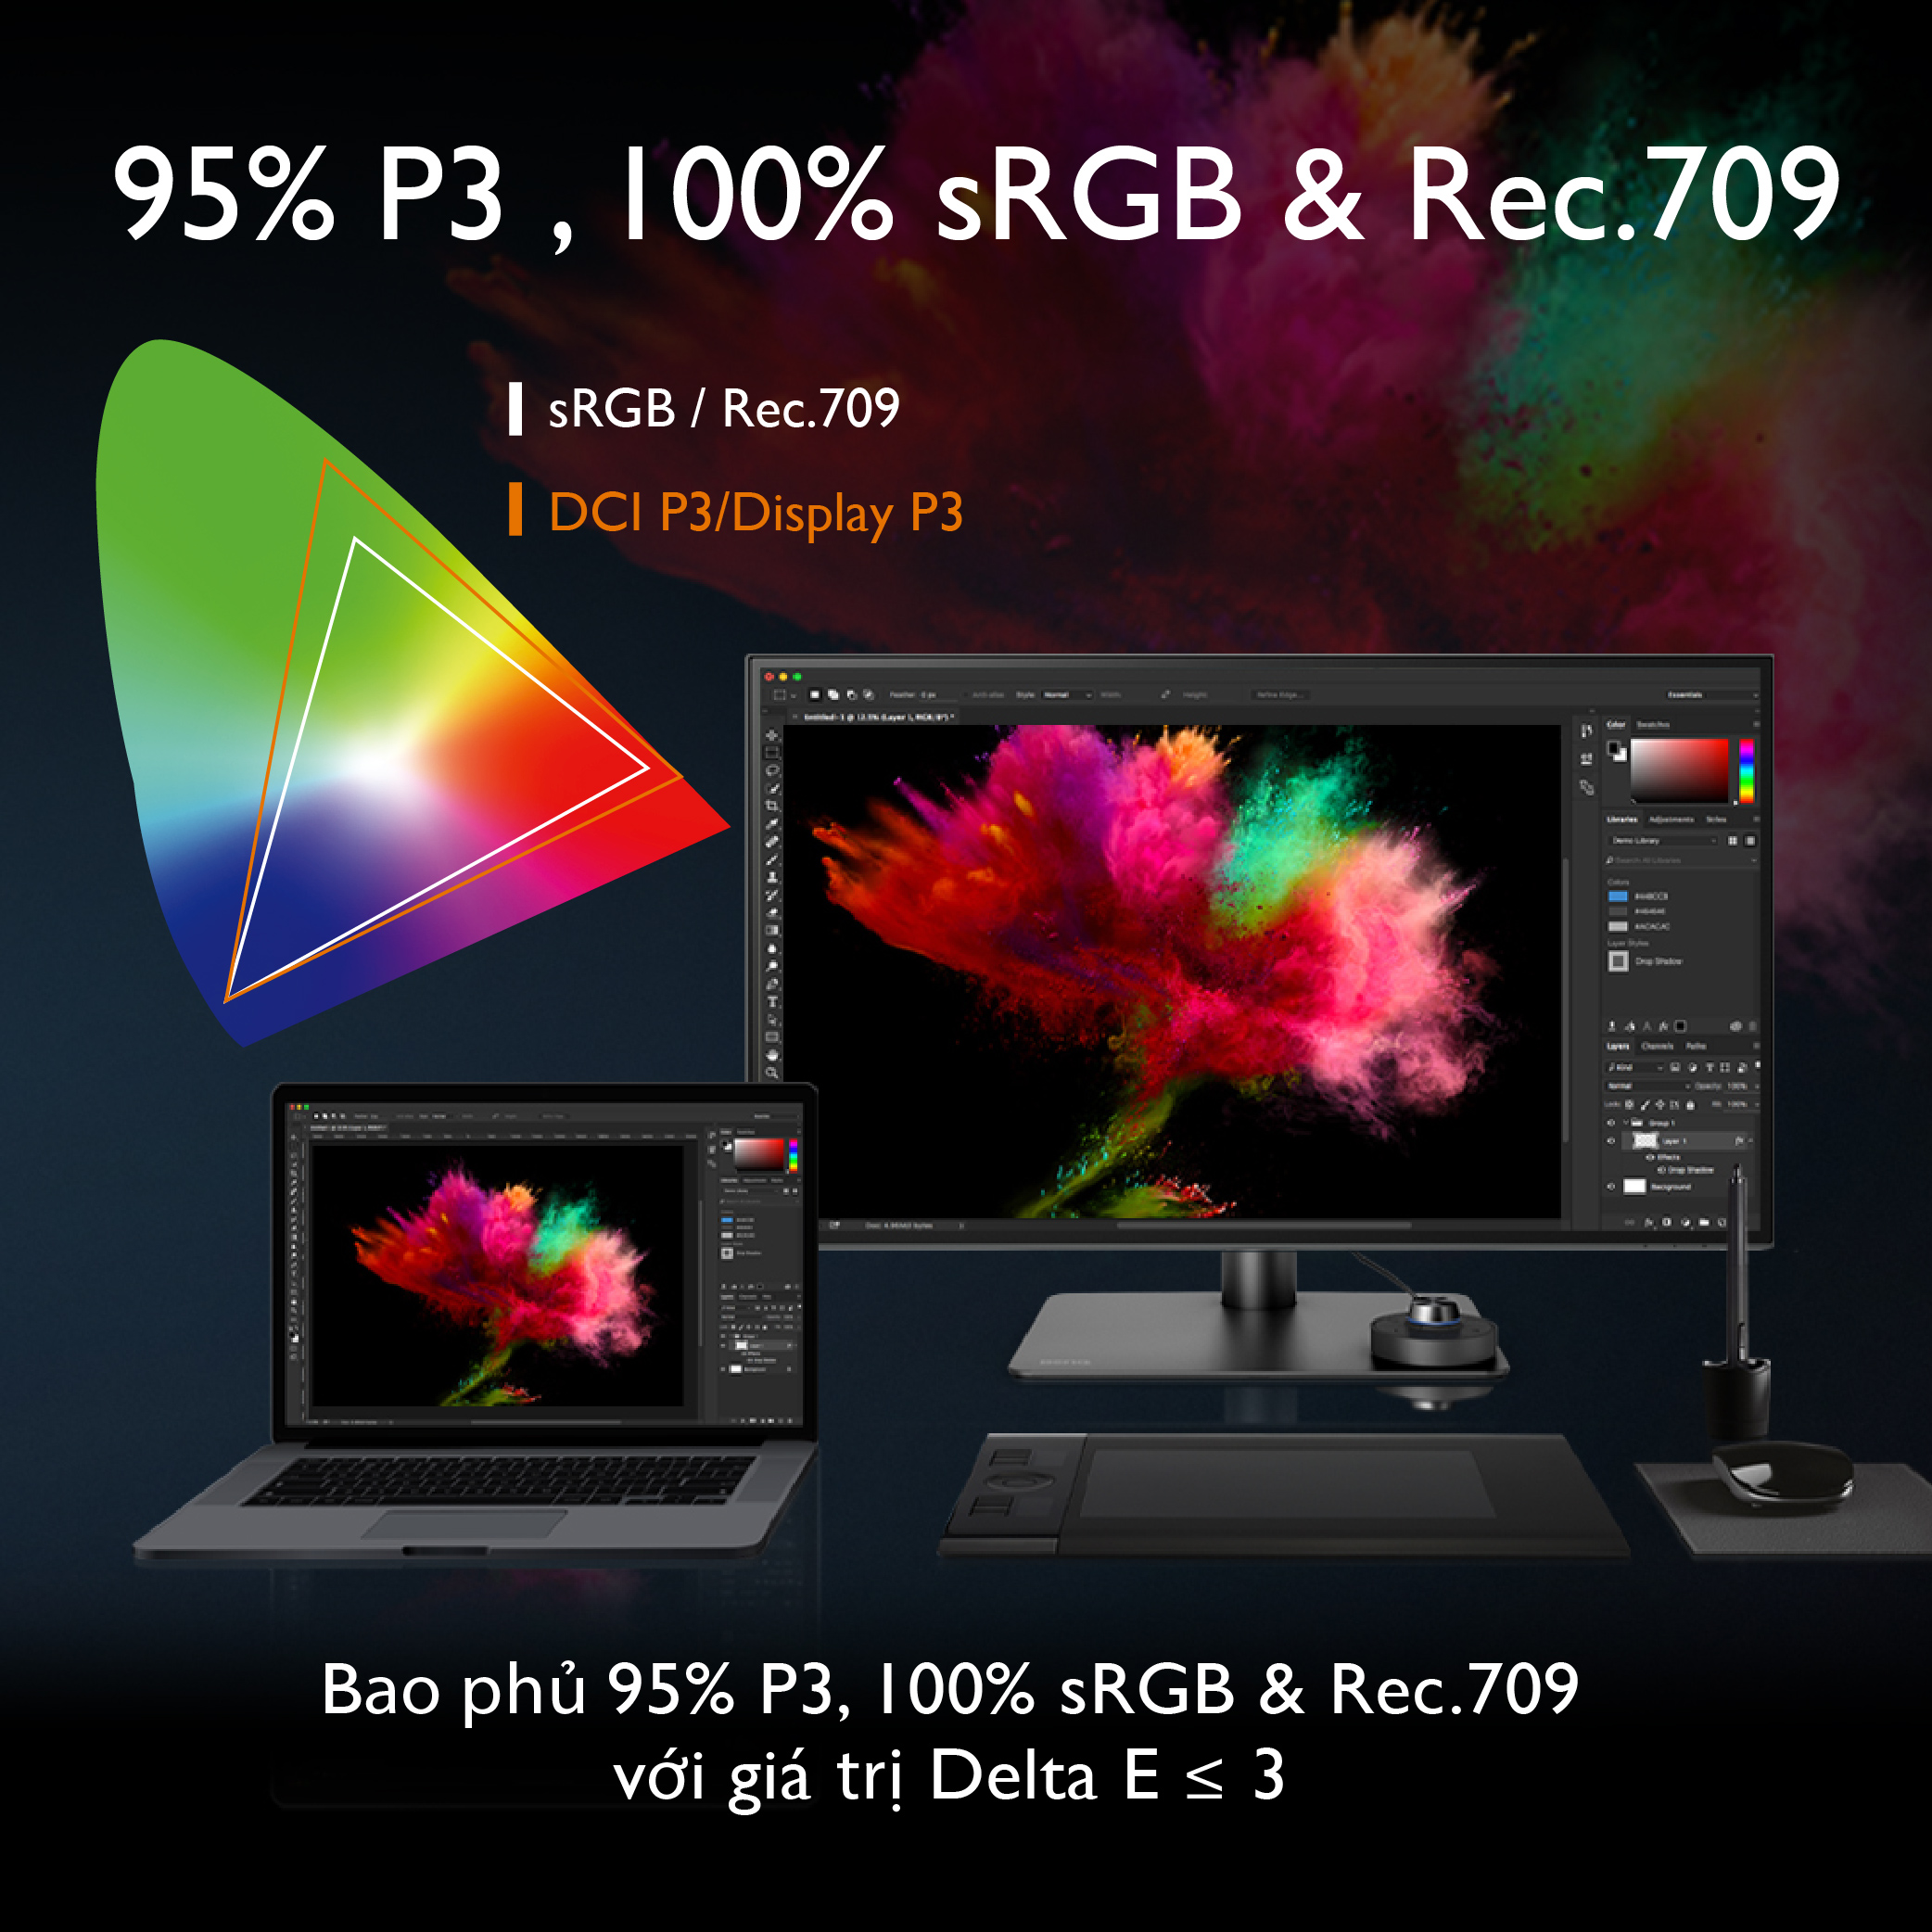 [MỚI] Màn hình máy tính BenQ PD2725U 27 inch 4K UHD 100% sRGB 95% P3 Thunderbolt 3 chuyên đồ họa...